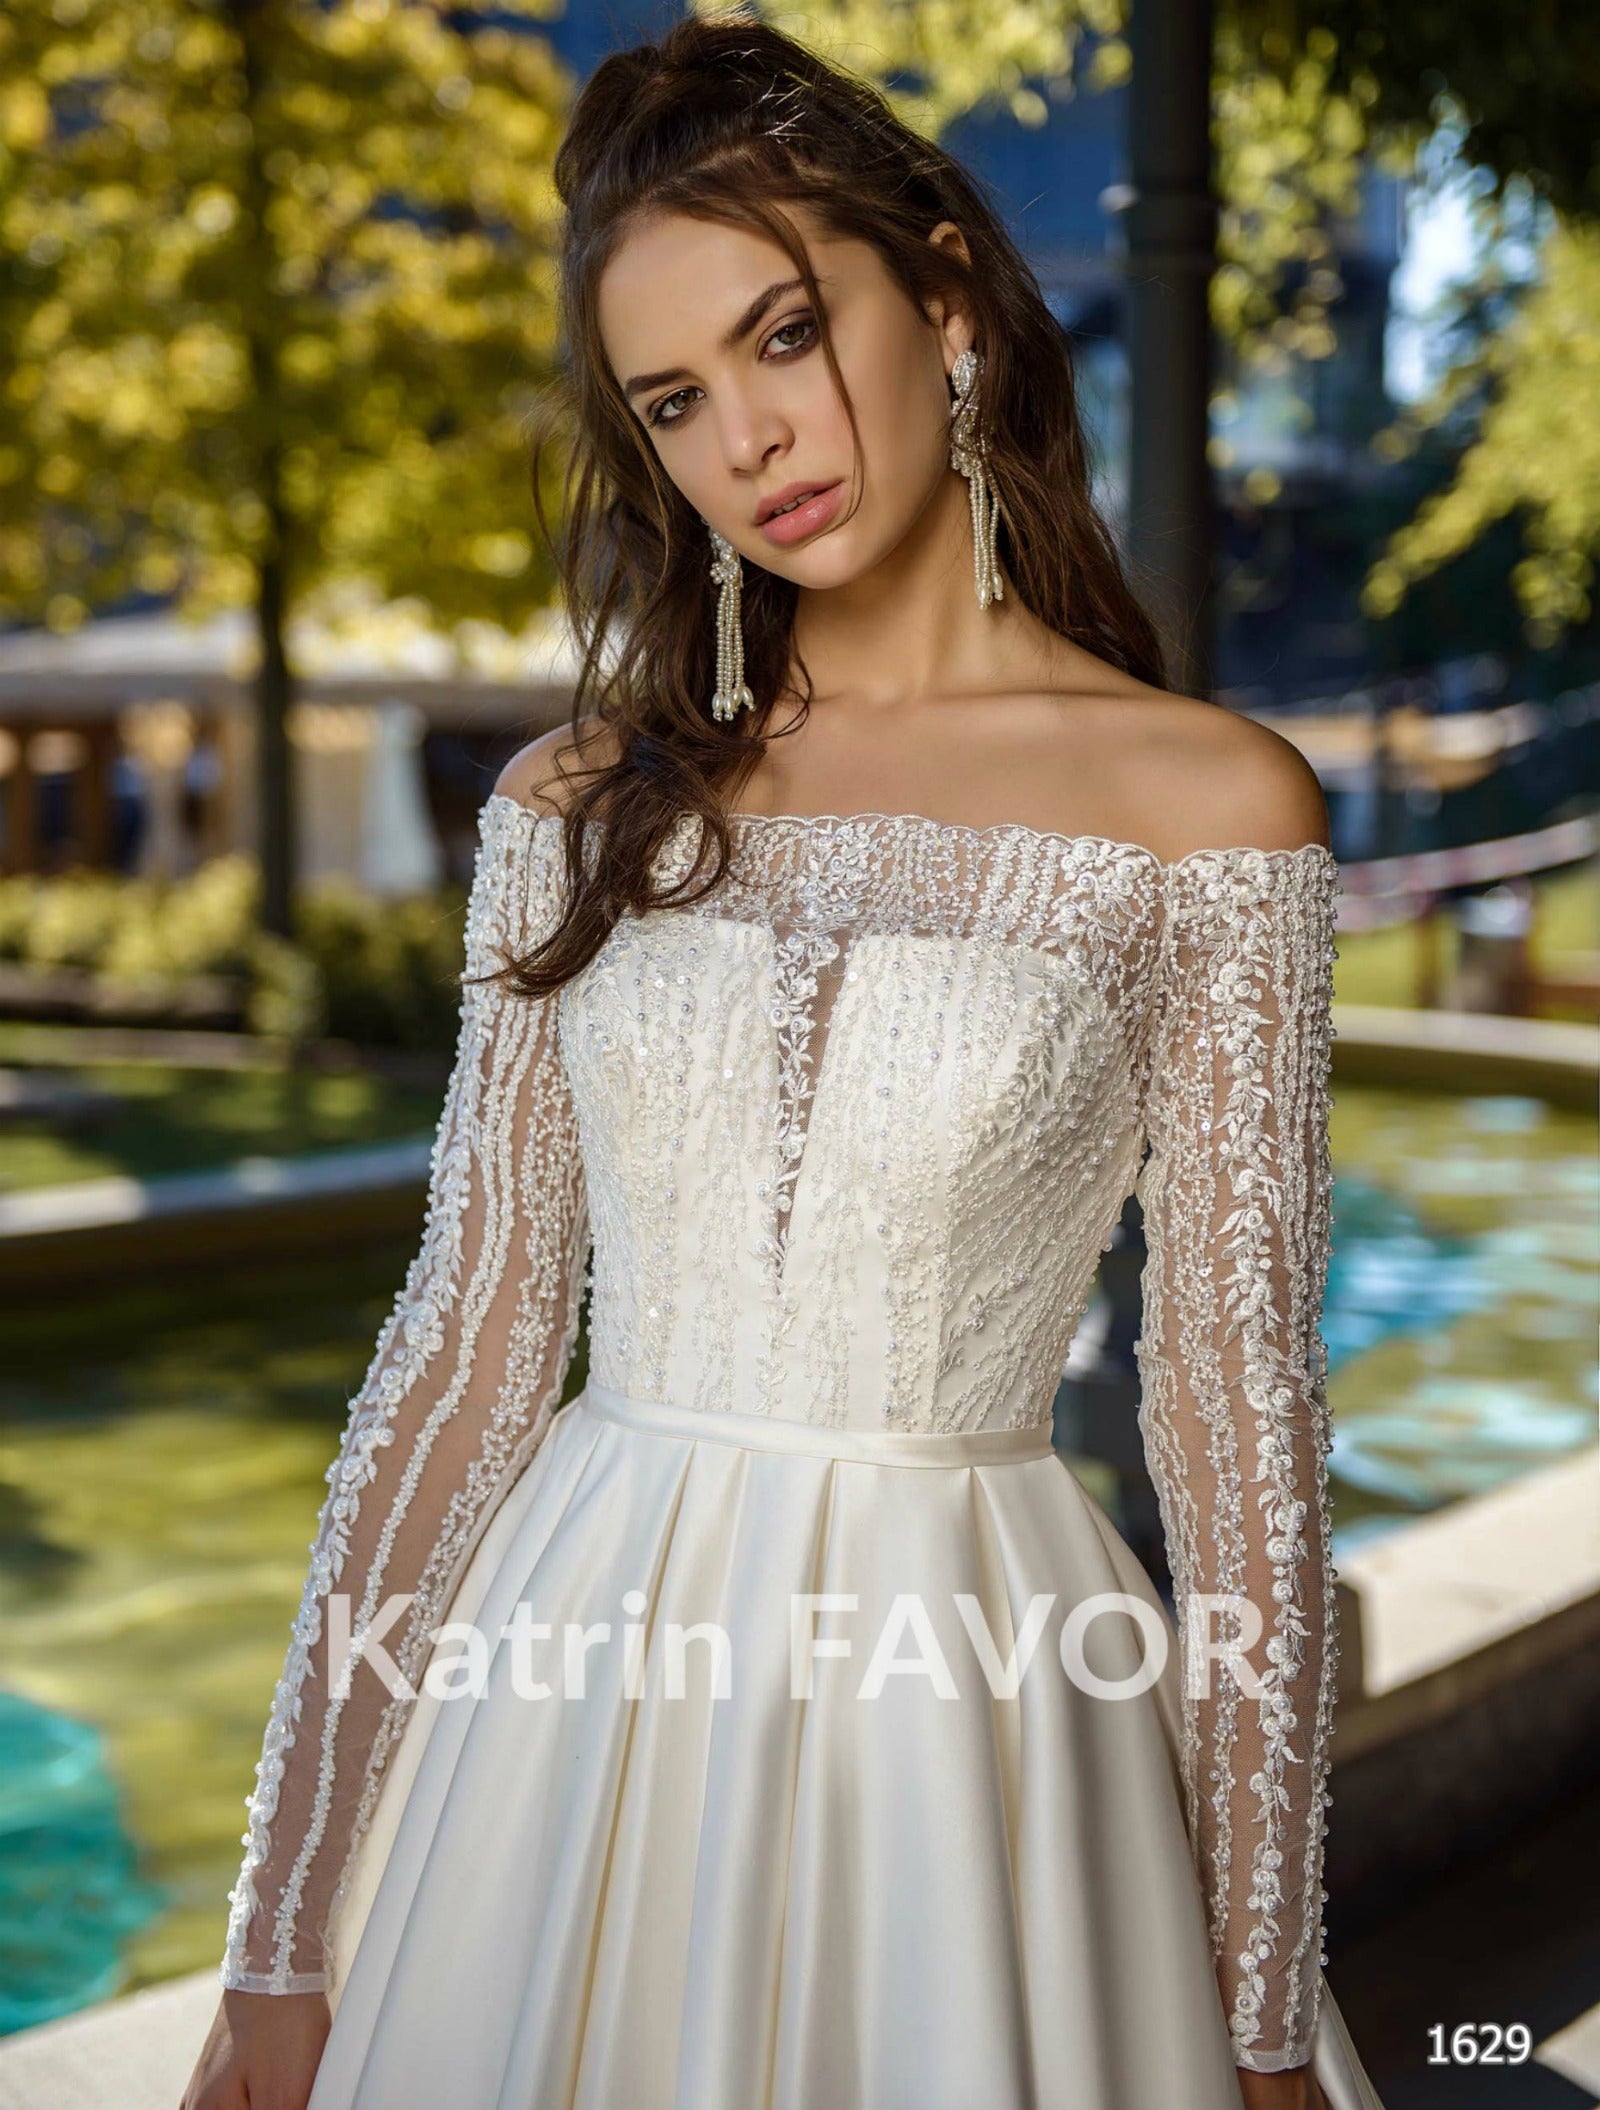 KatrinFAVORboutique-Off the shoulder princess wedding dress